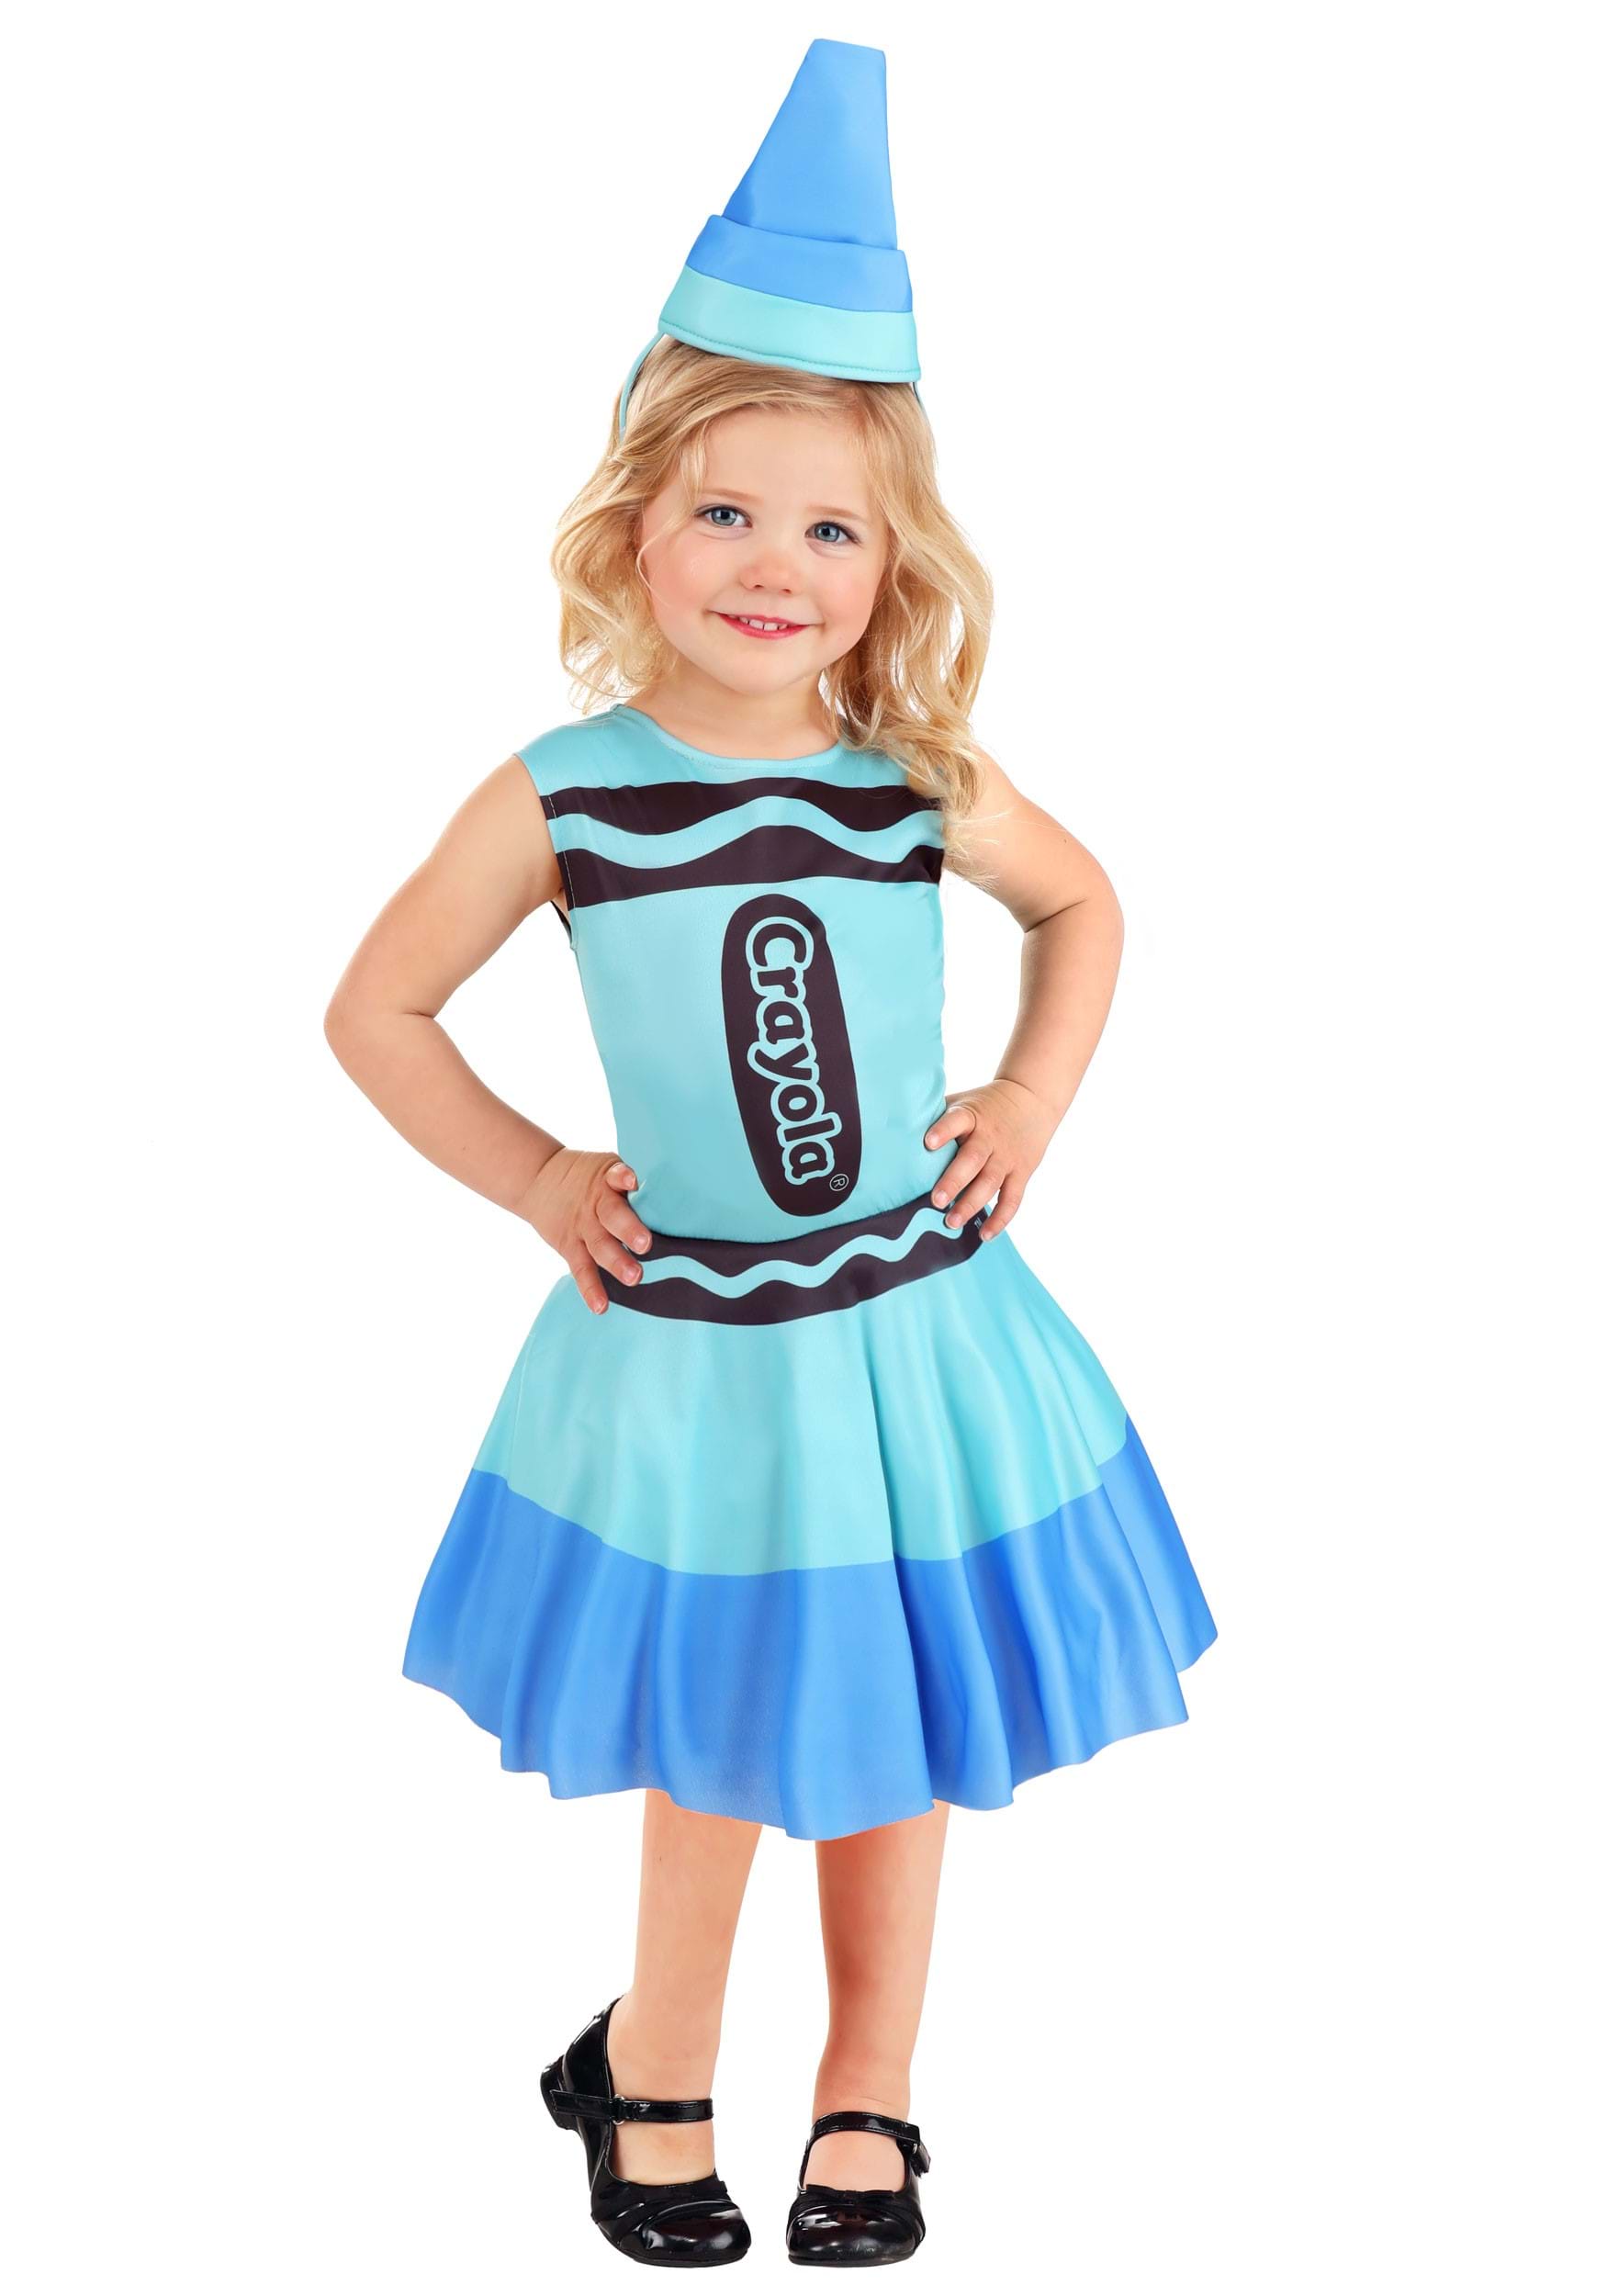 Photos - Fancy Dress Crayola FUN Costumes Blue  Crayon Toddler Costume Dress 